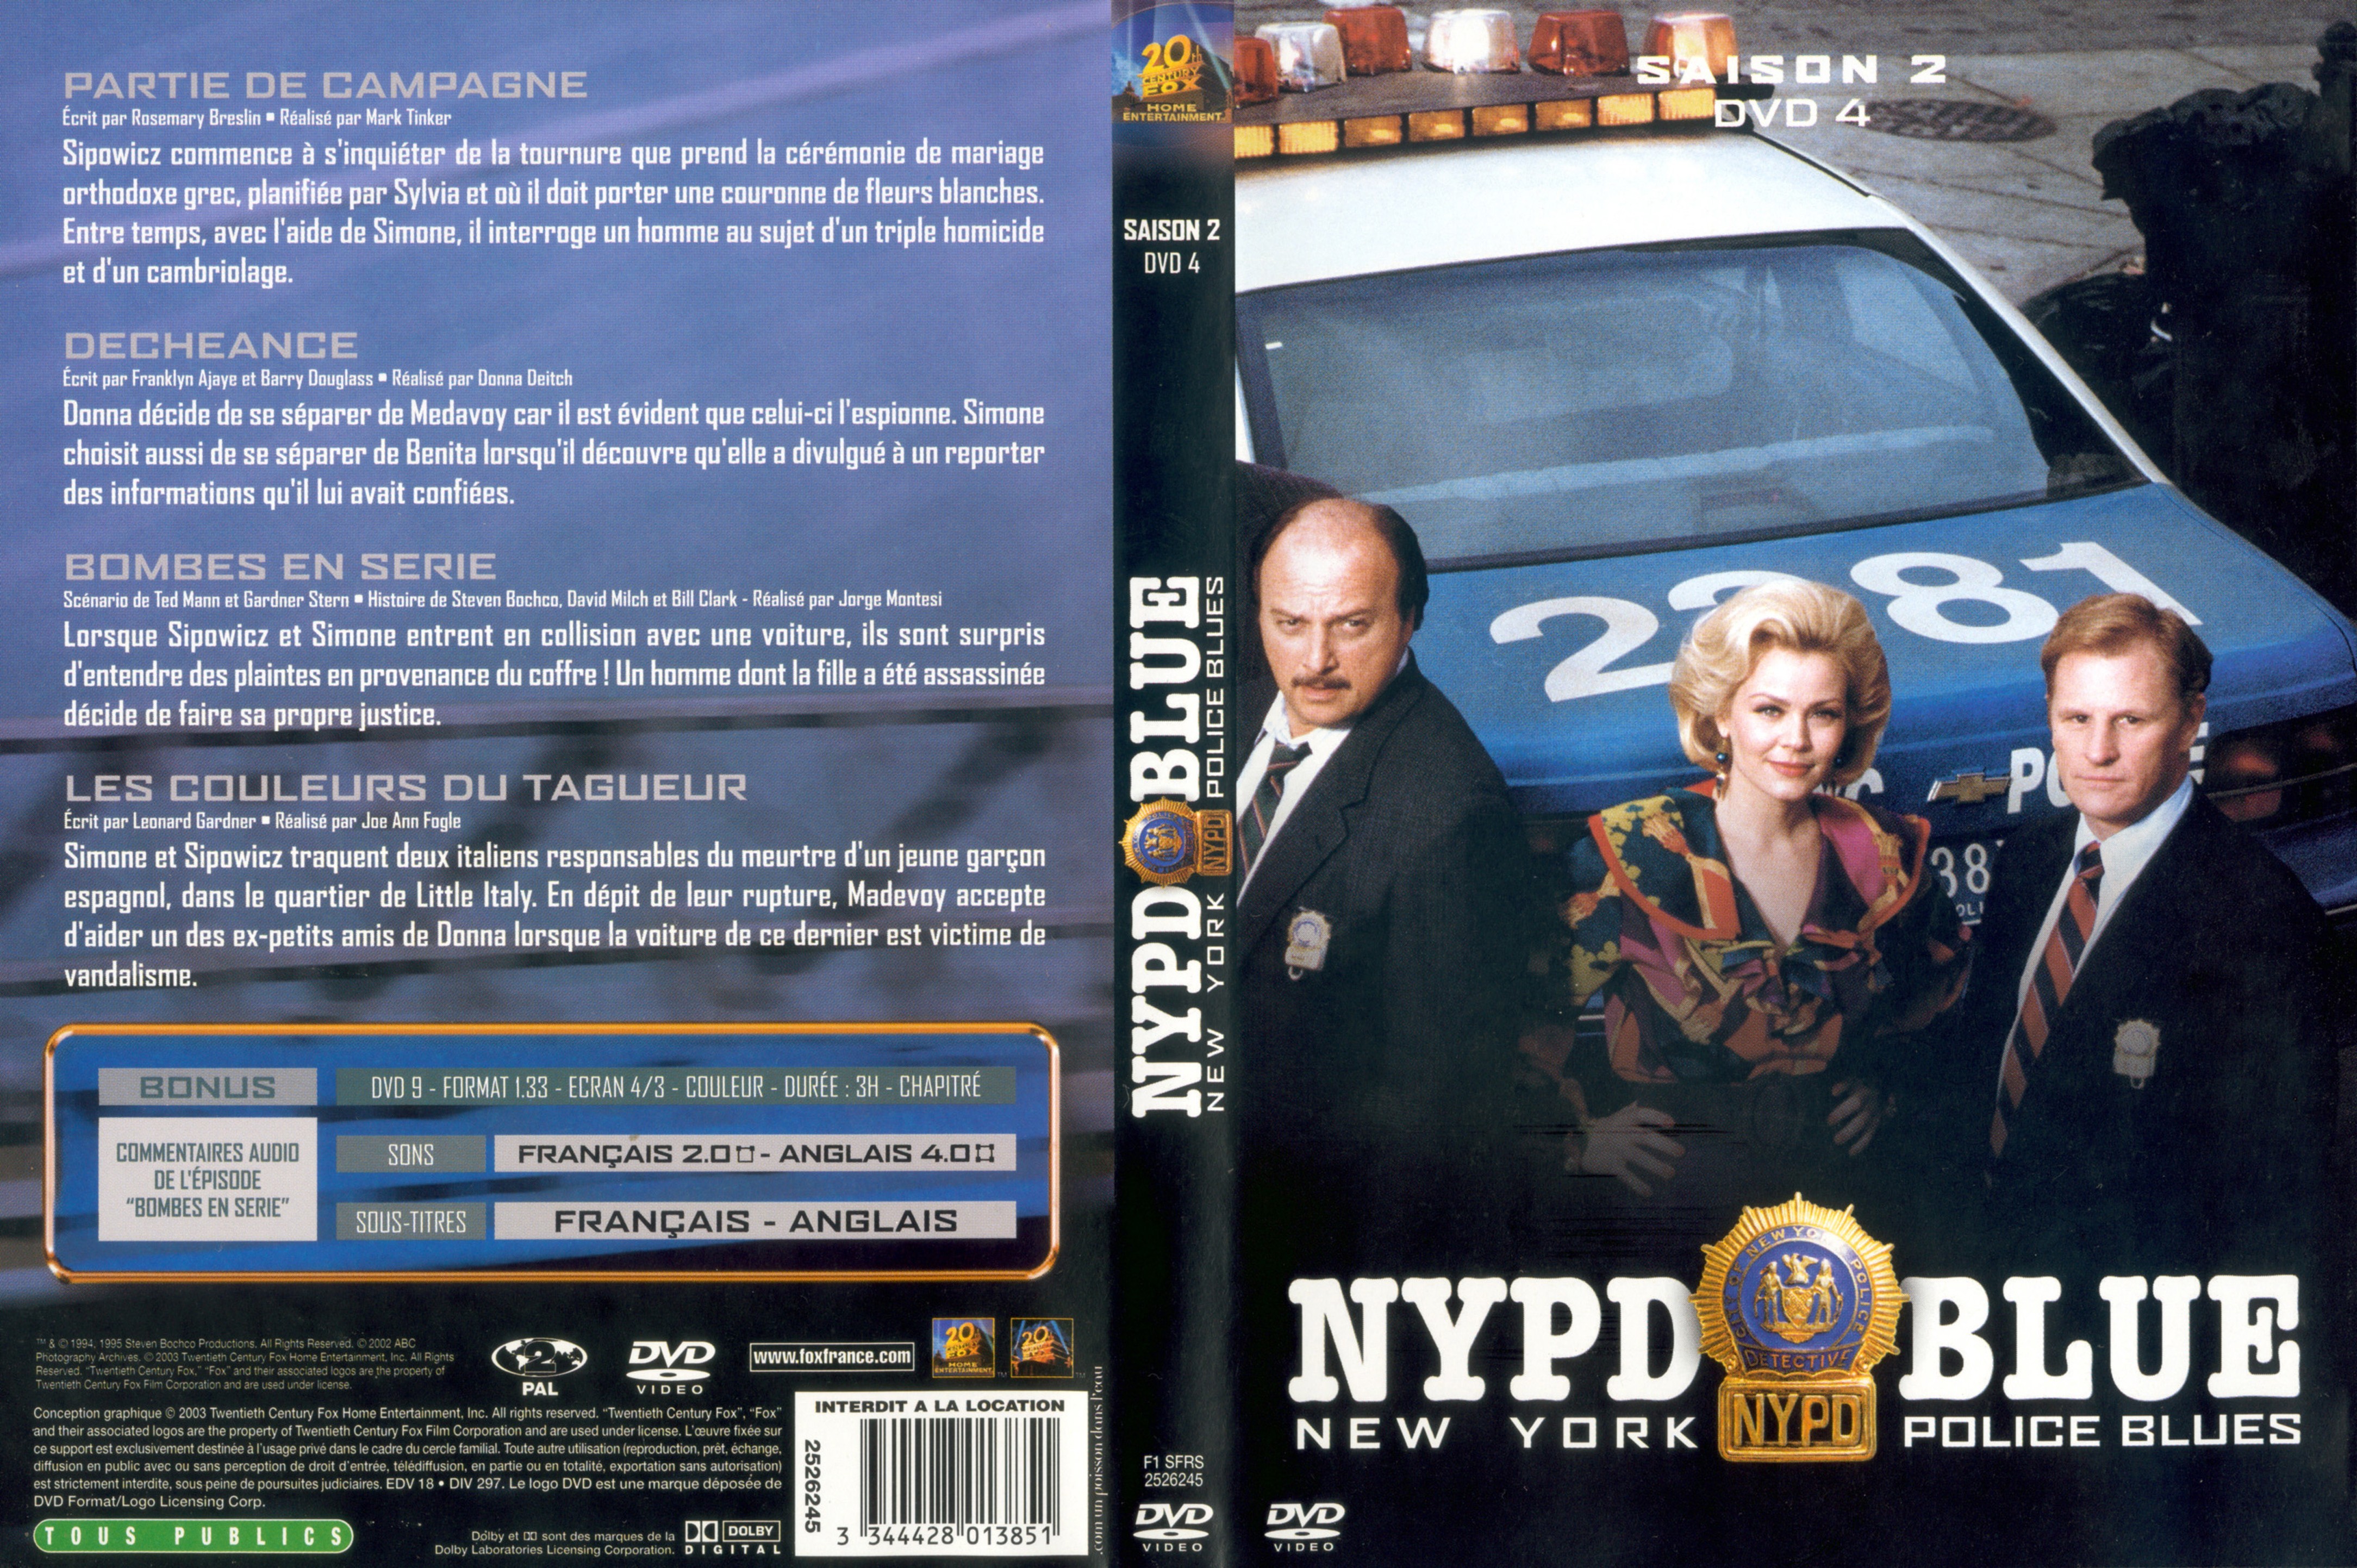 Jaquette DVD NYPD Blue saison 02 dvd 04